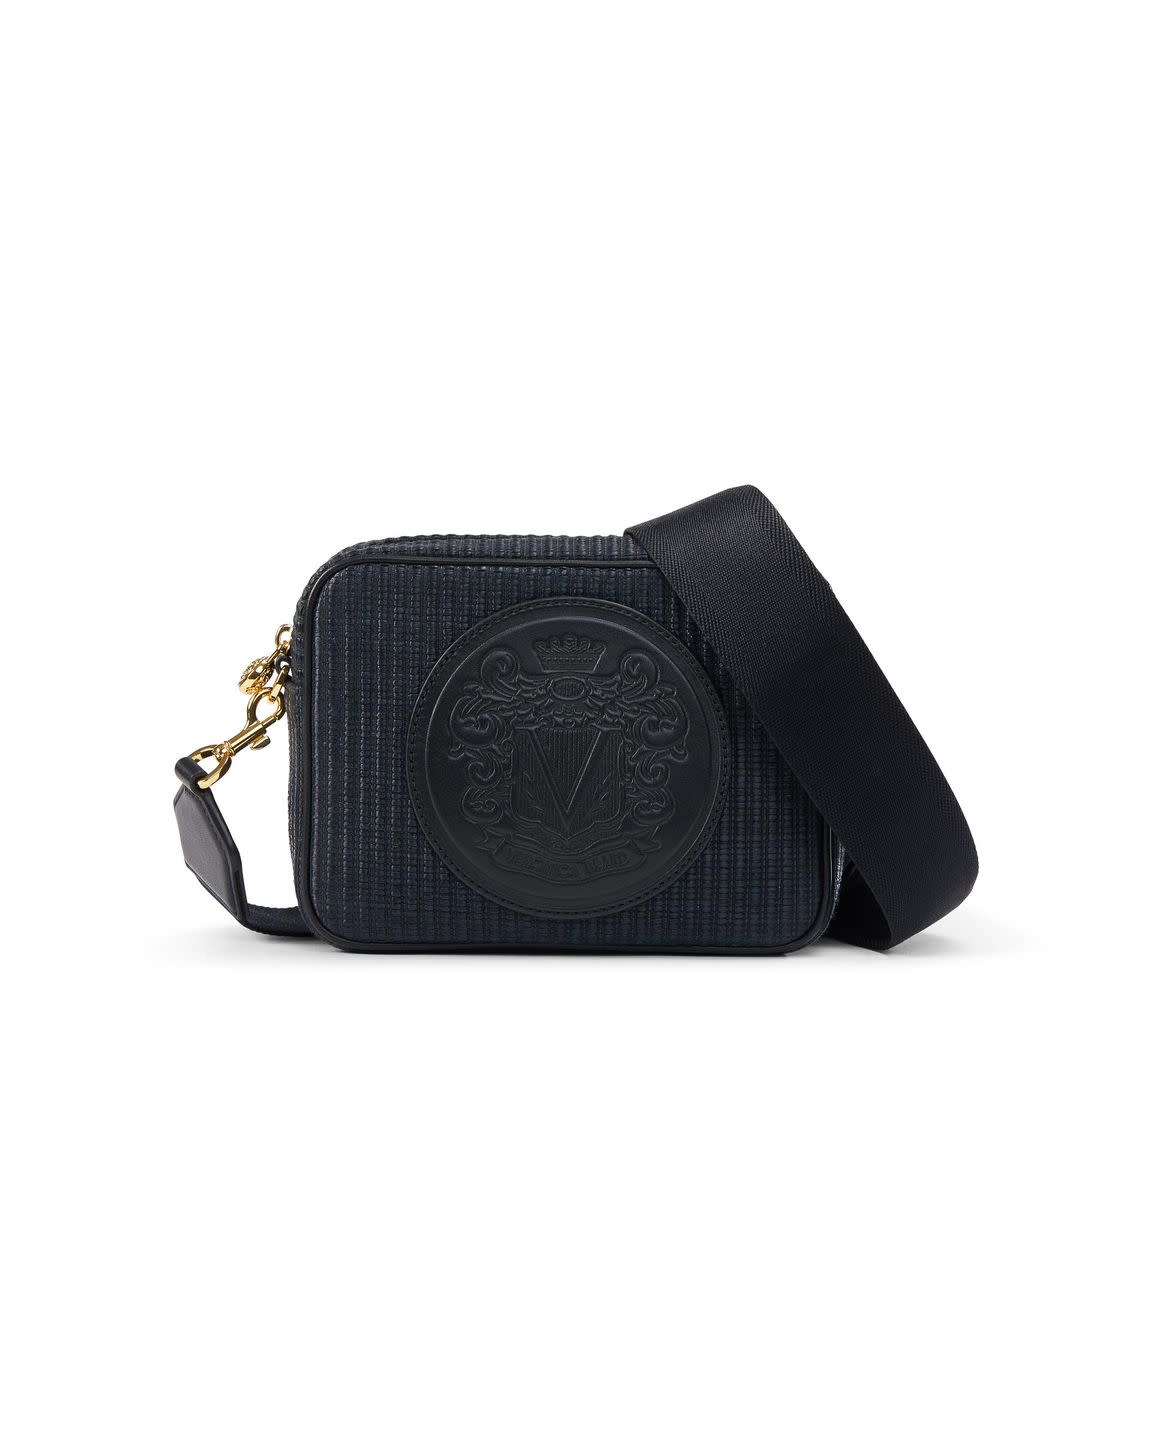 a black leather purse